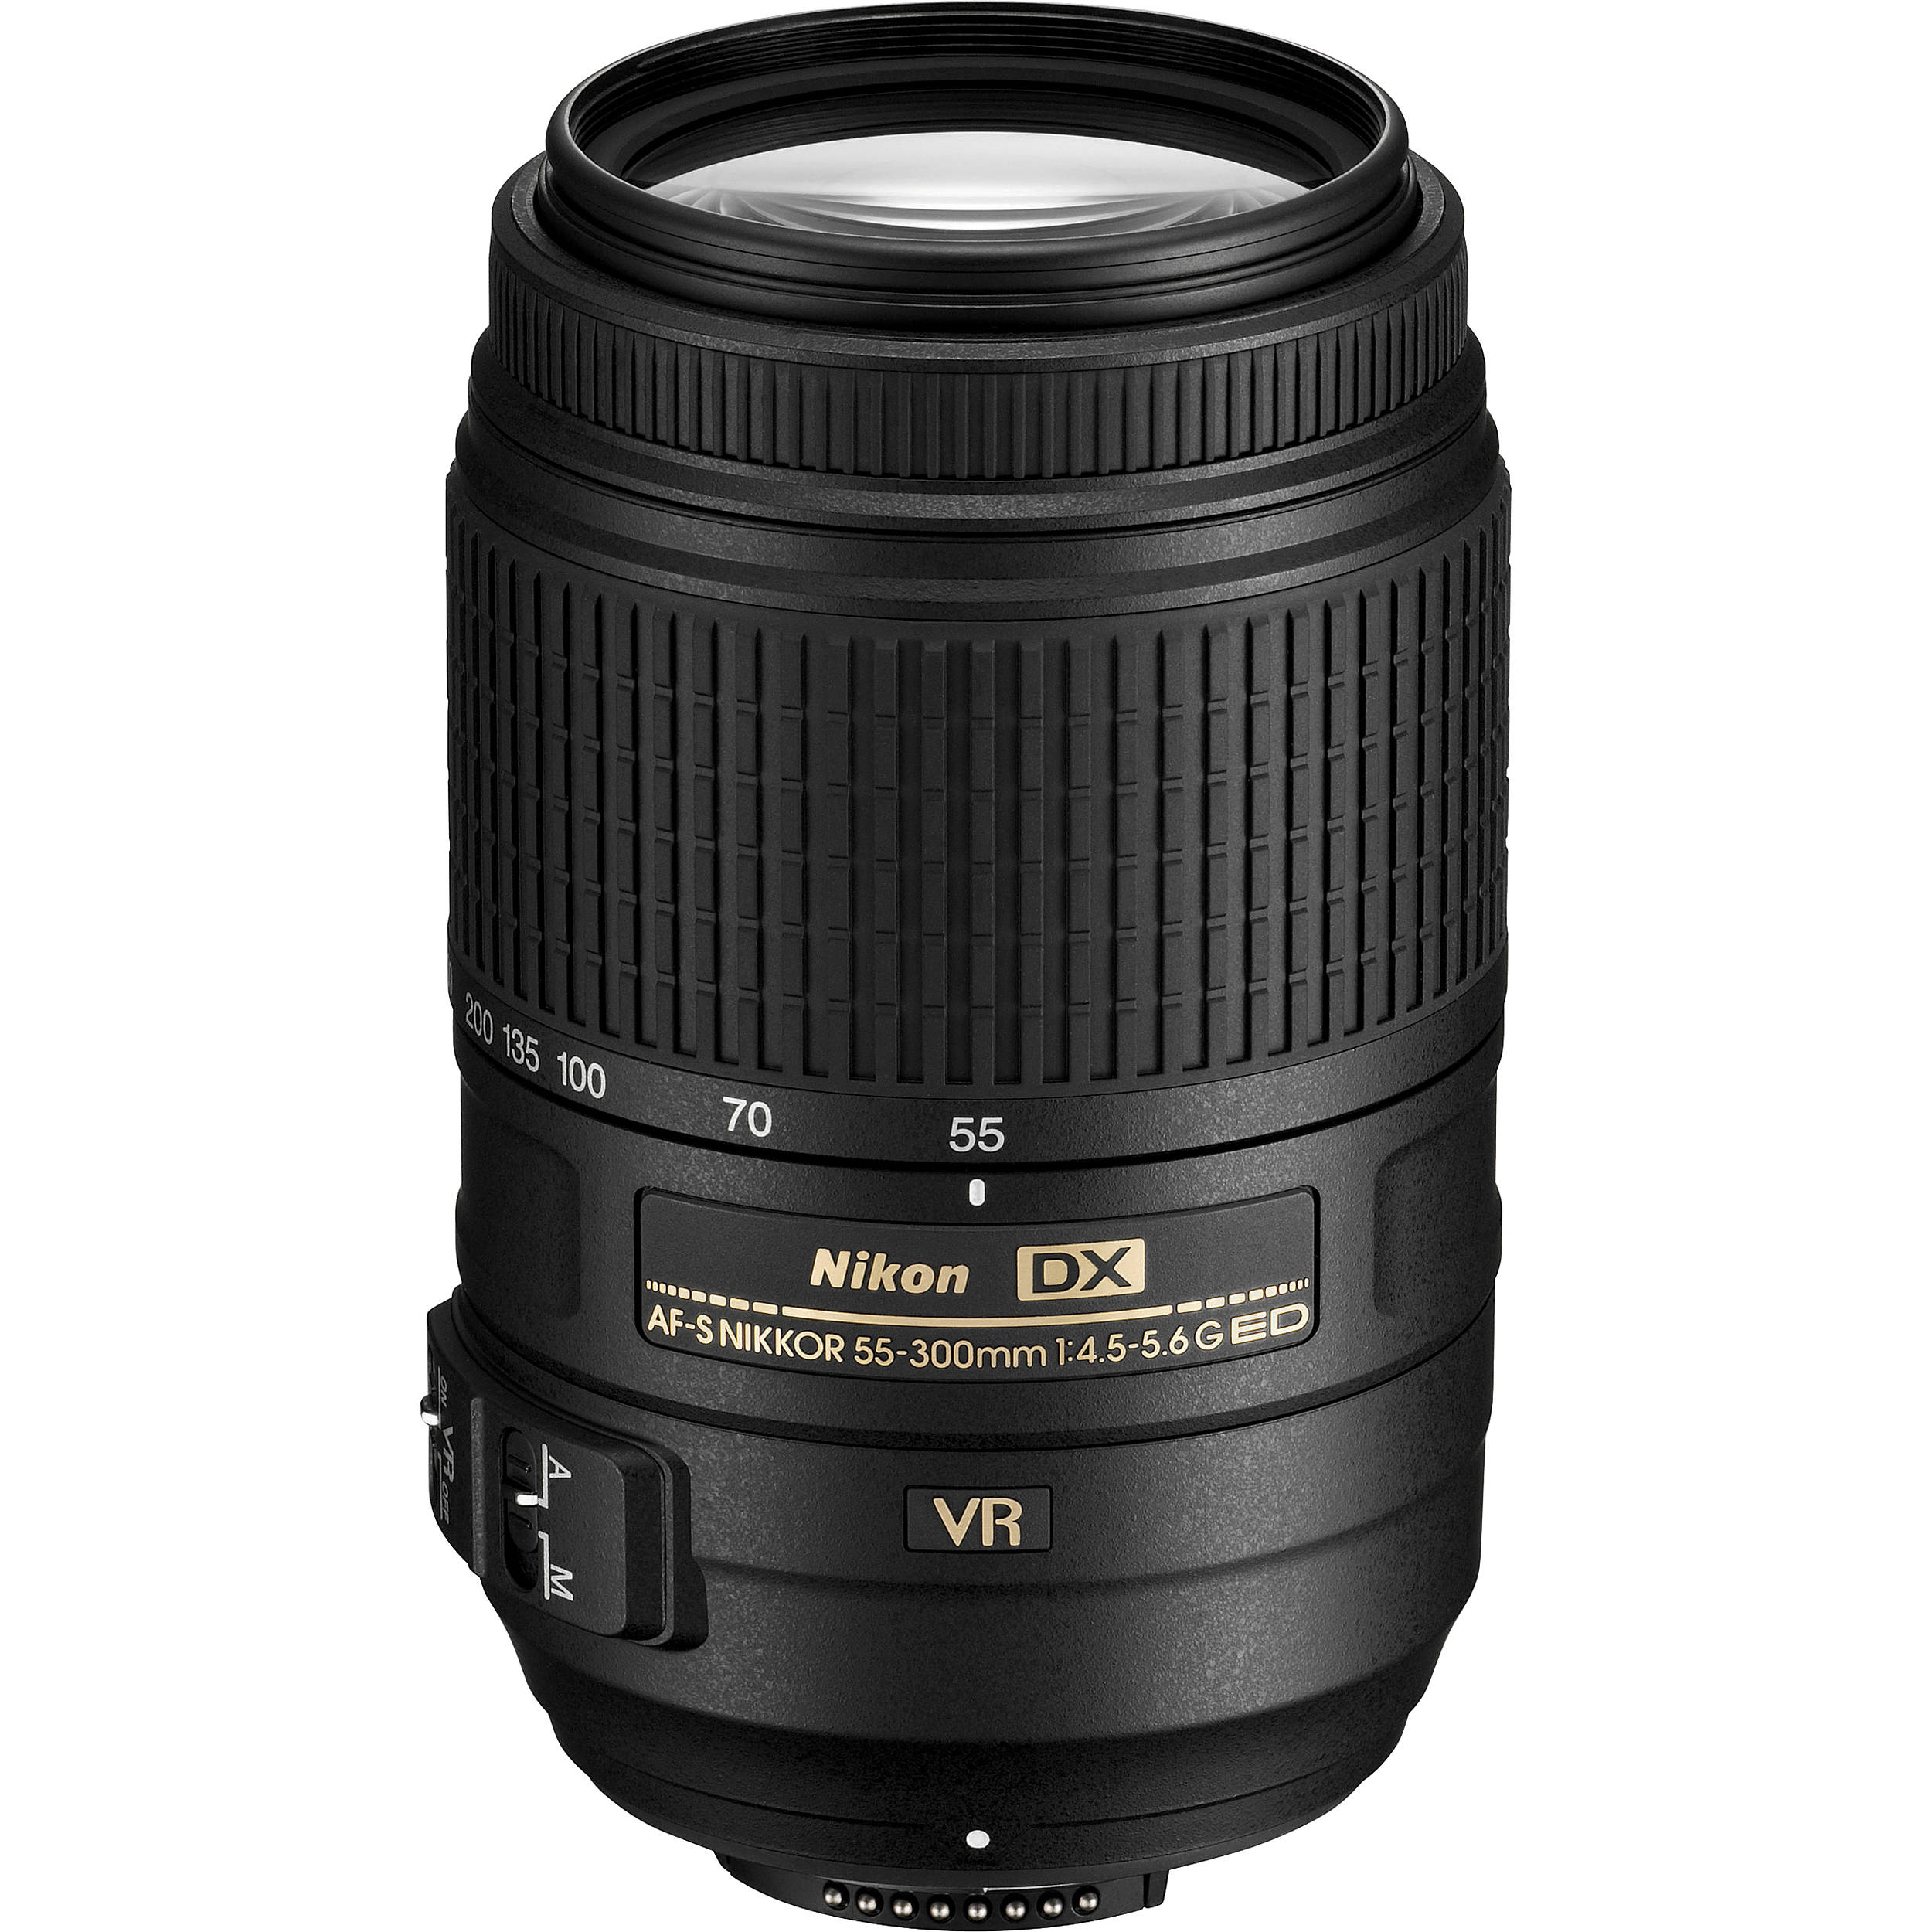 Nikon AFS DX NIKKOR 55300mm f/4.55.6G ED VR Lens 2197 BH